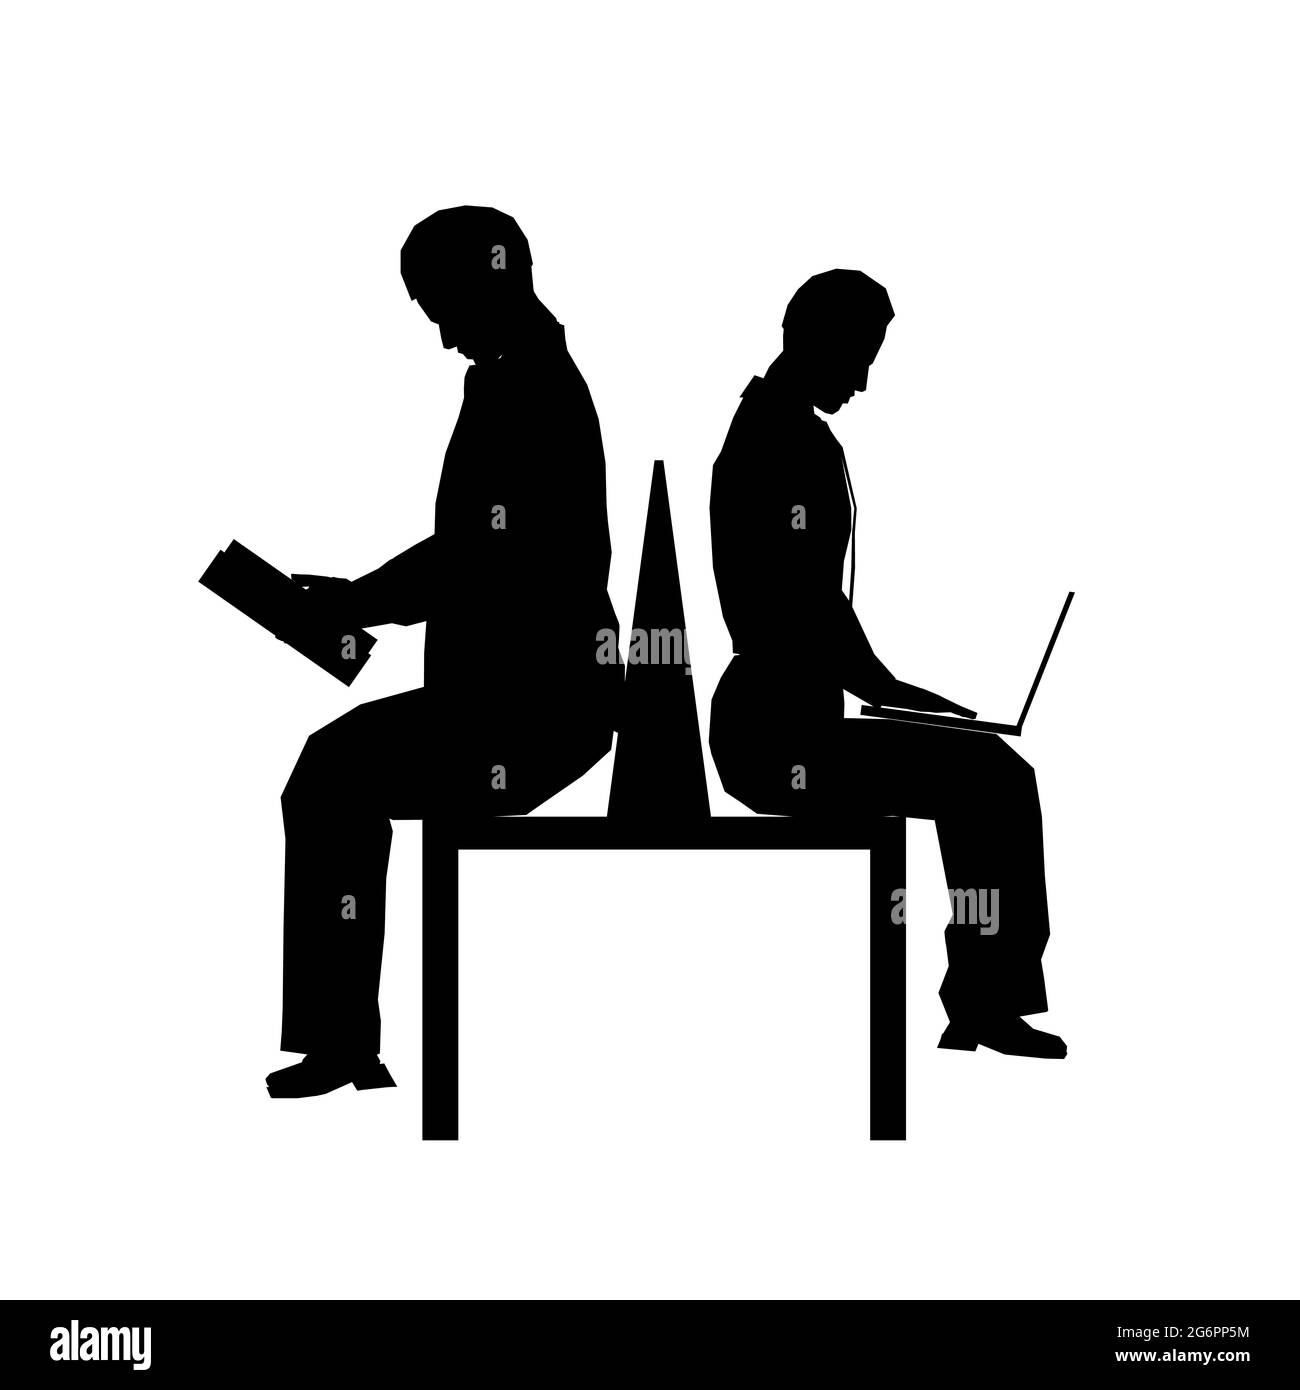 Silhouette di due persone sedute su una panchina isolata su uno sfondo bianco. Una persona sta leggendo un libro, l'altra sta lavorando in un portatile. Vettore ill Illustrazione Vettoriale